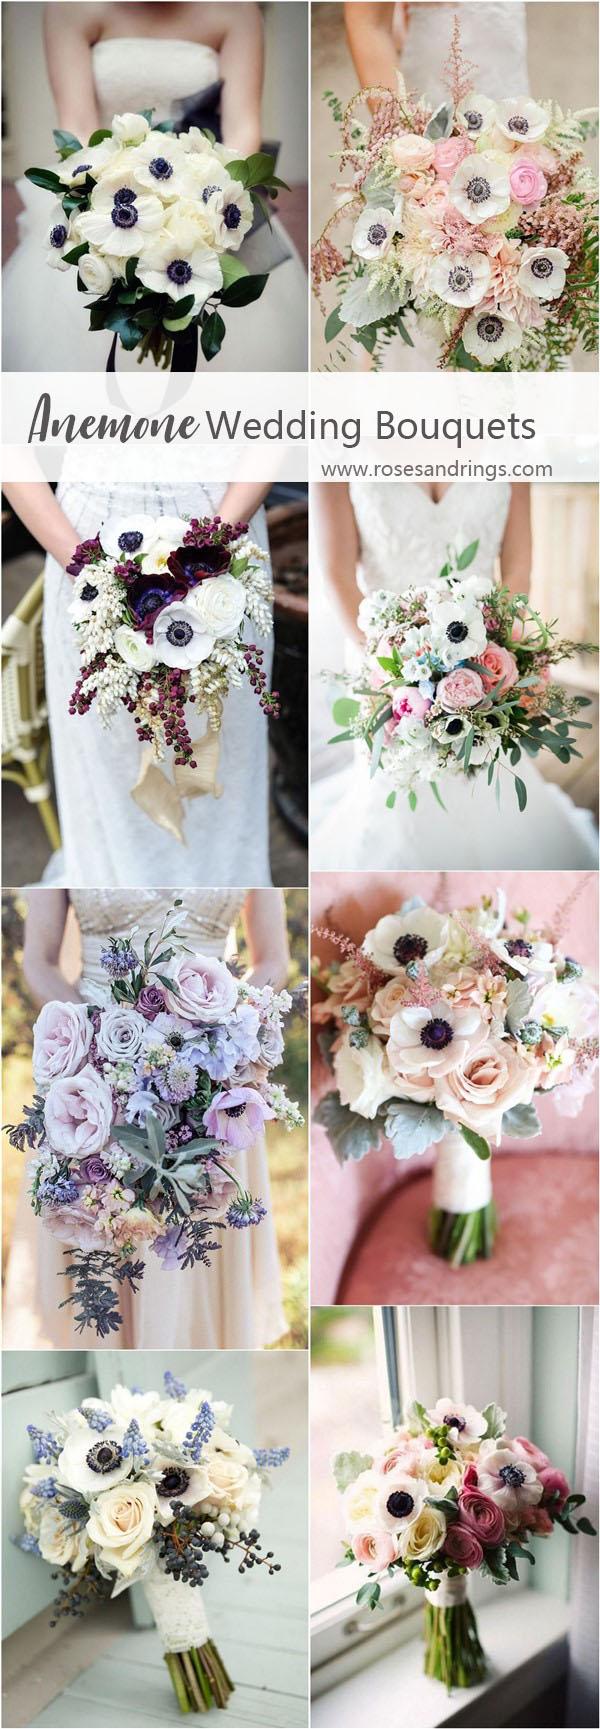 wedding flower trend ideas - anemone wedding flower bouquets